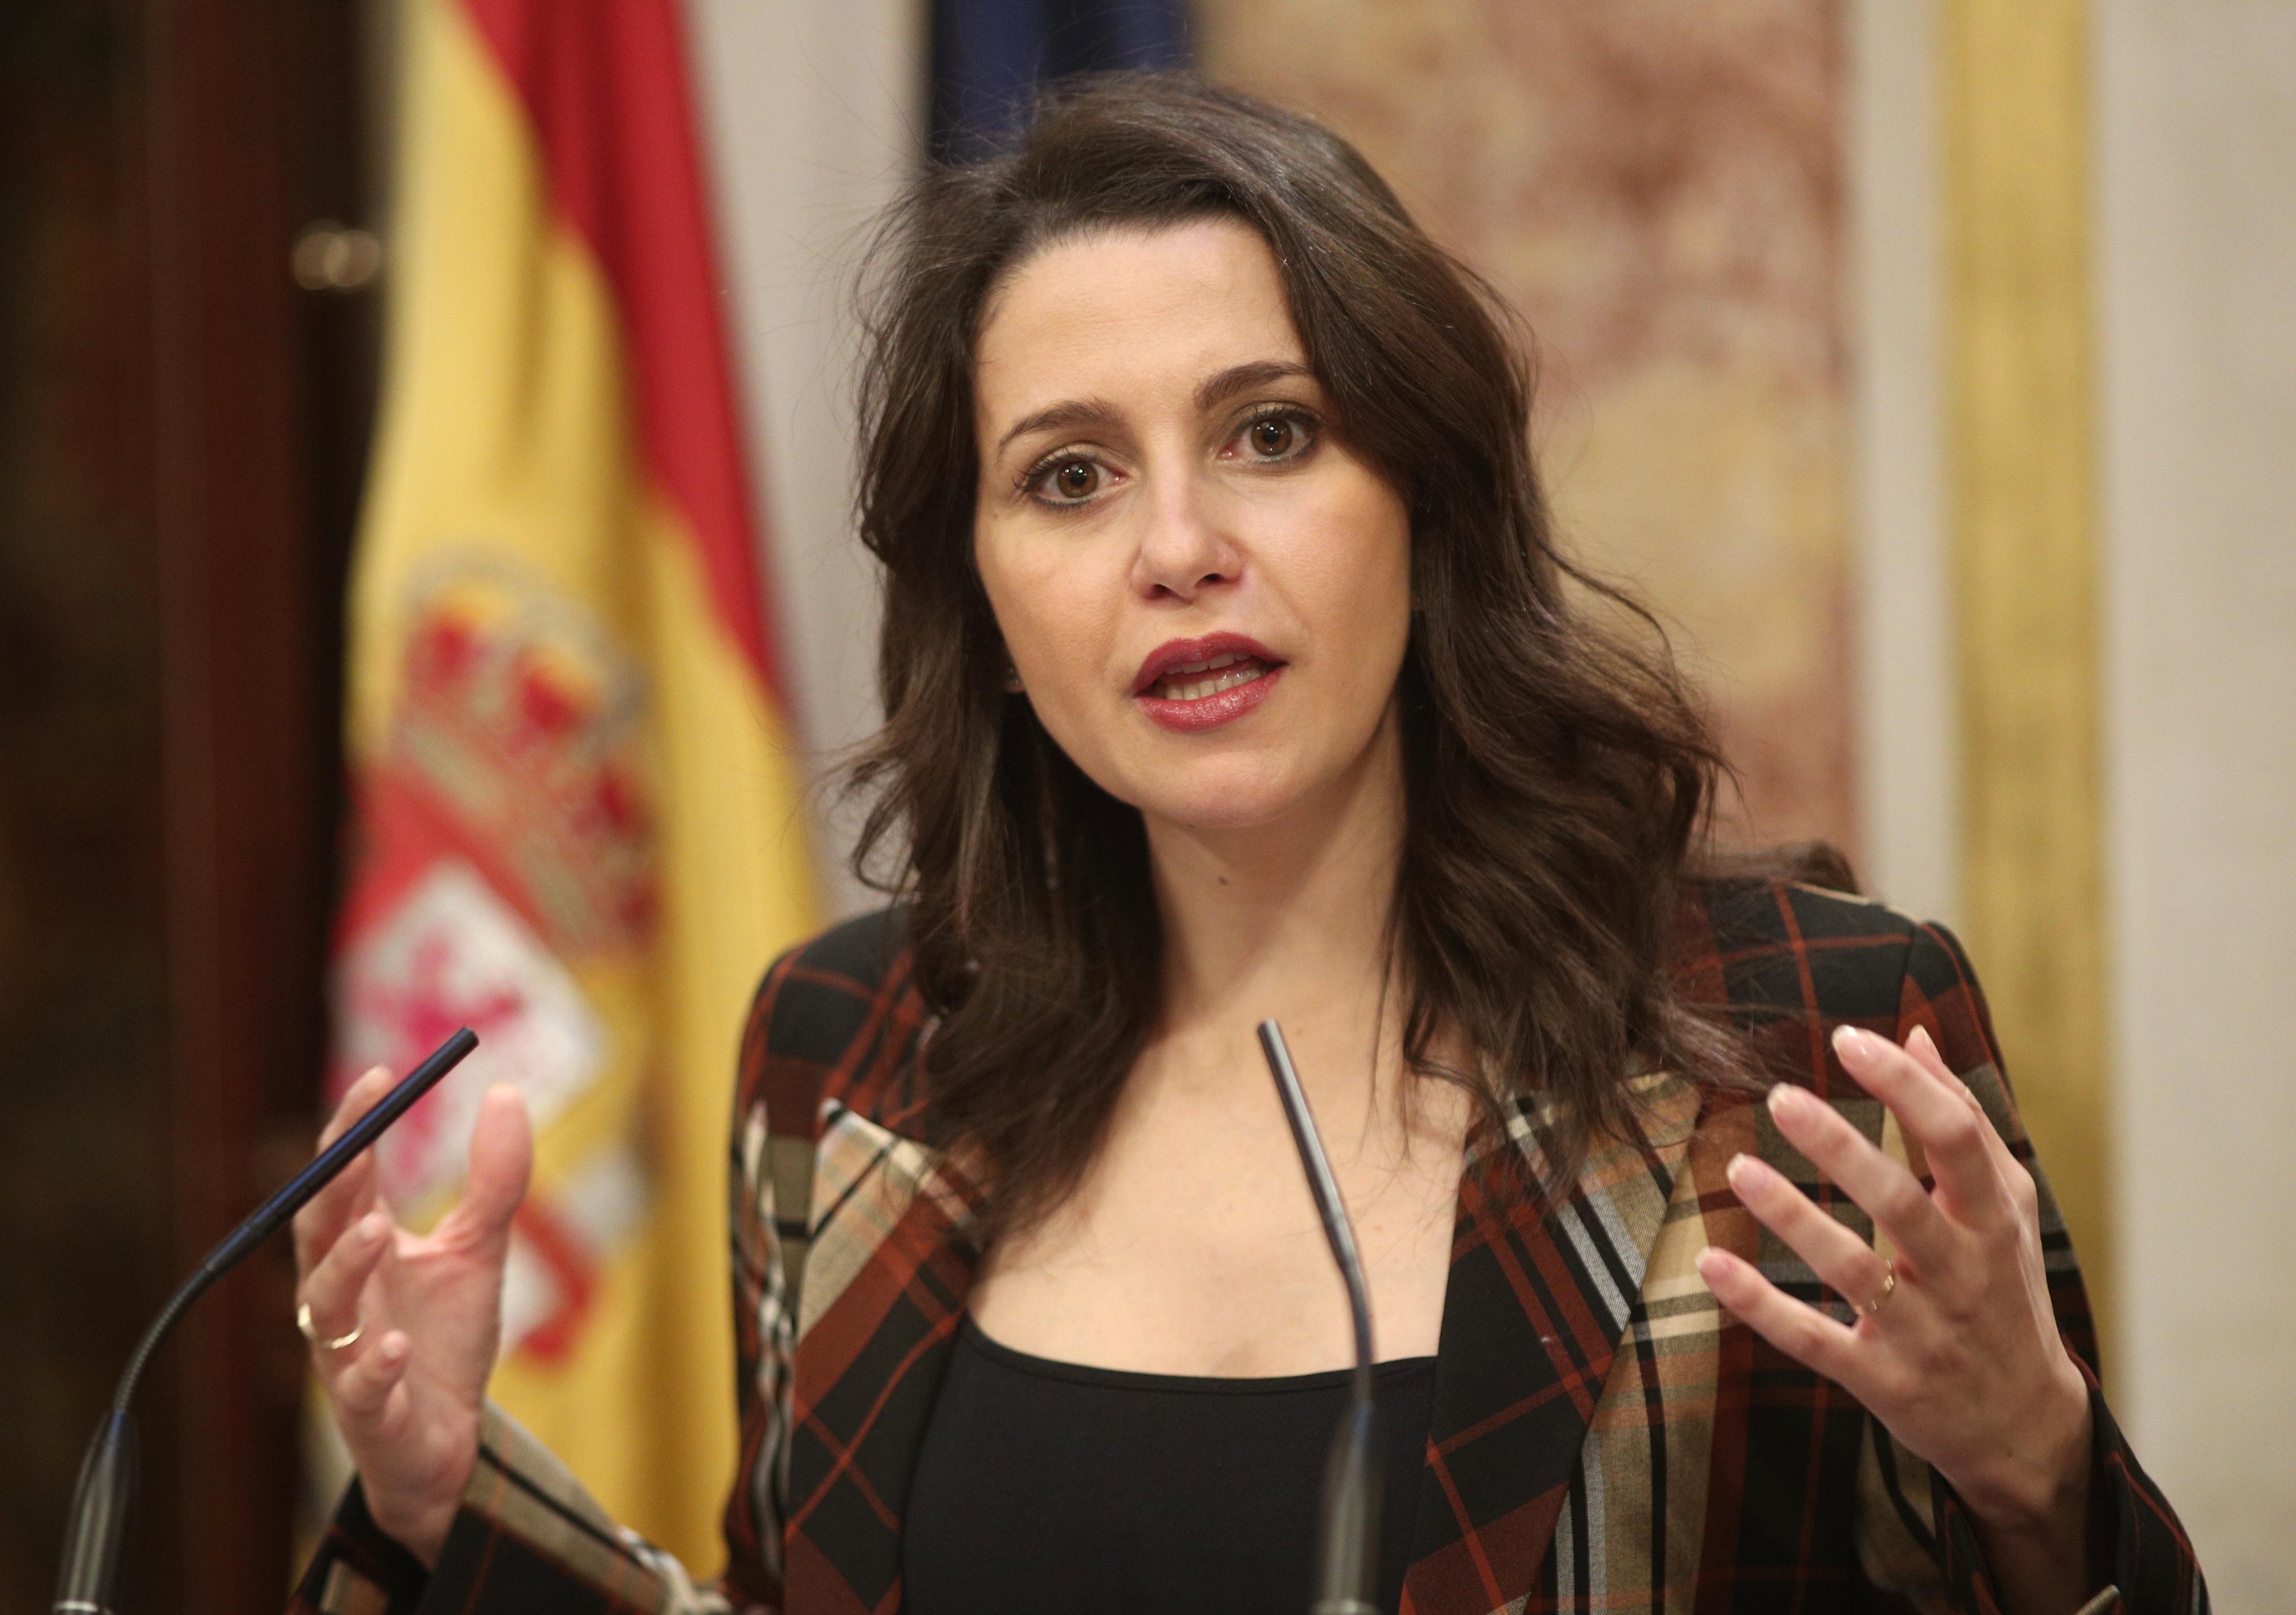 La portavoz parlamentaria de Ciudadanos Inés Arrimadas ofrece una rueda de prensa en el Congreso de los Diputados durante el descanso de la primera sesión del debate de investidura del candidato